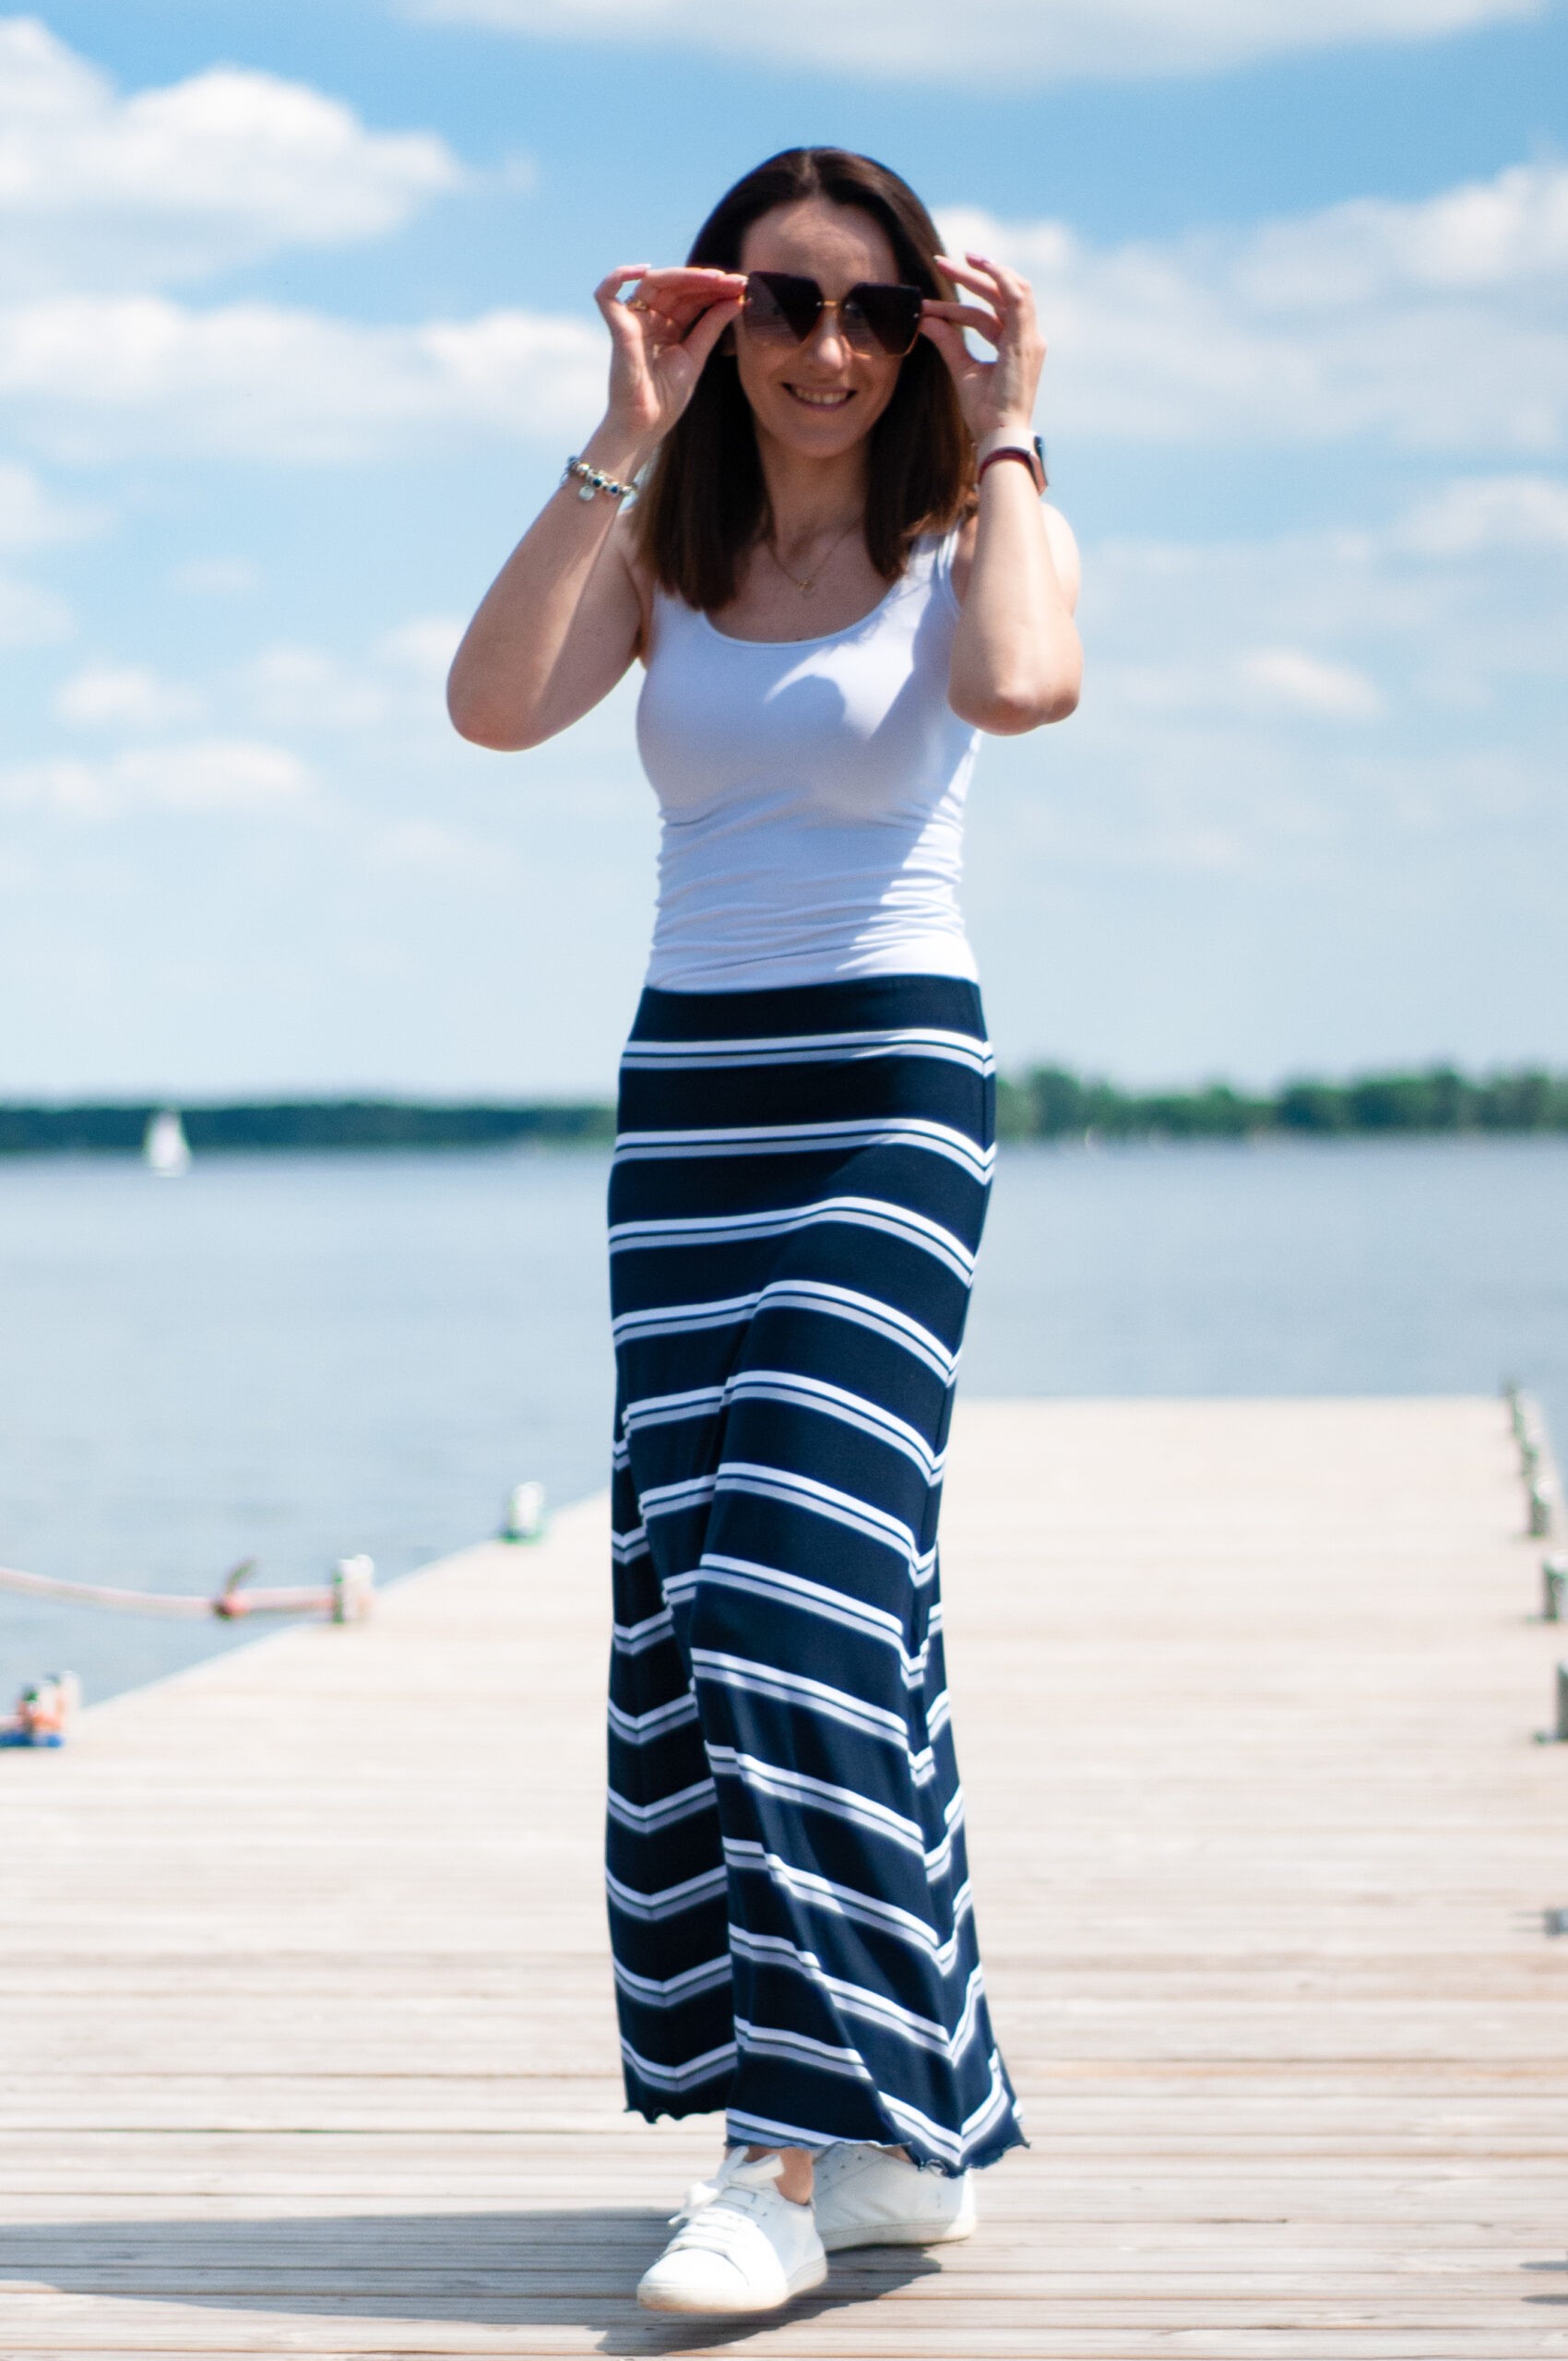 Long striped skirt (0752) miniaturka 1